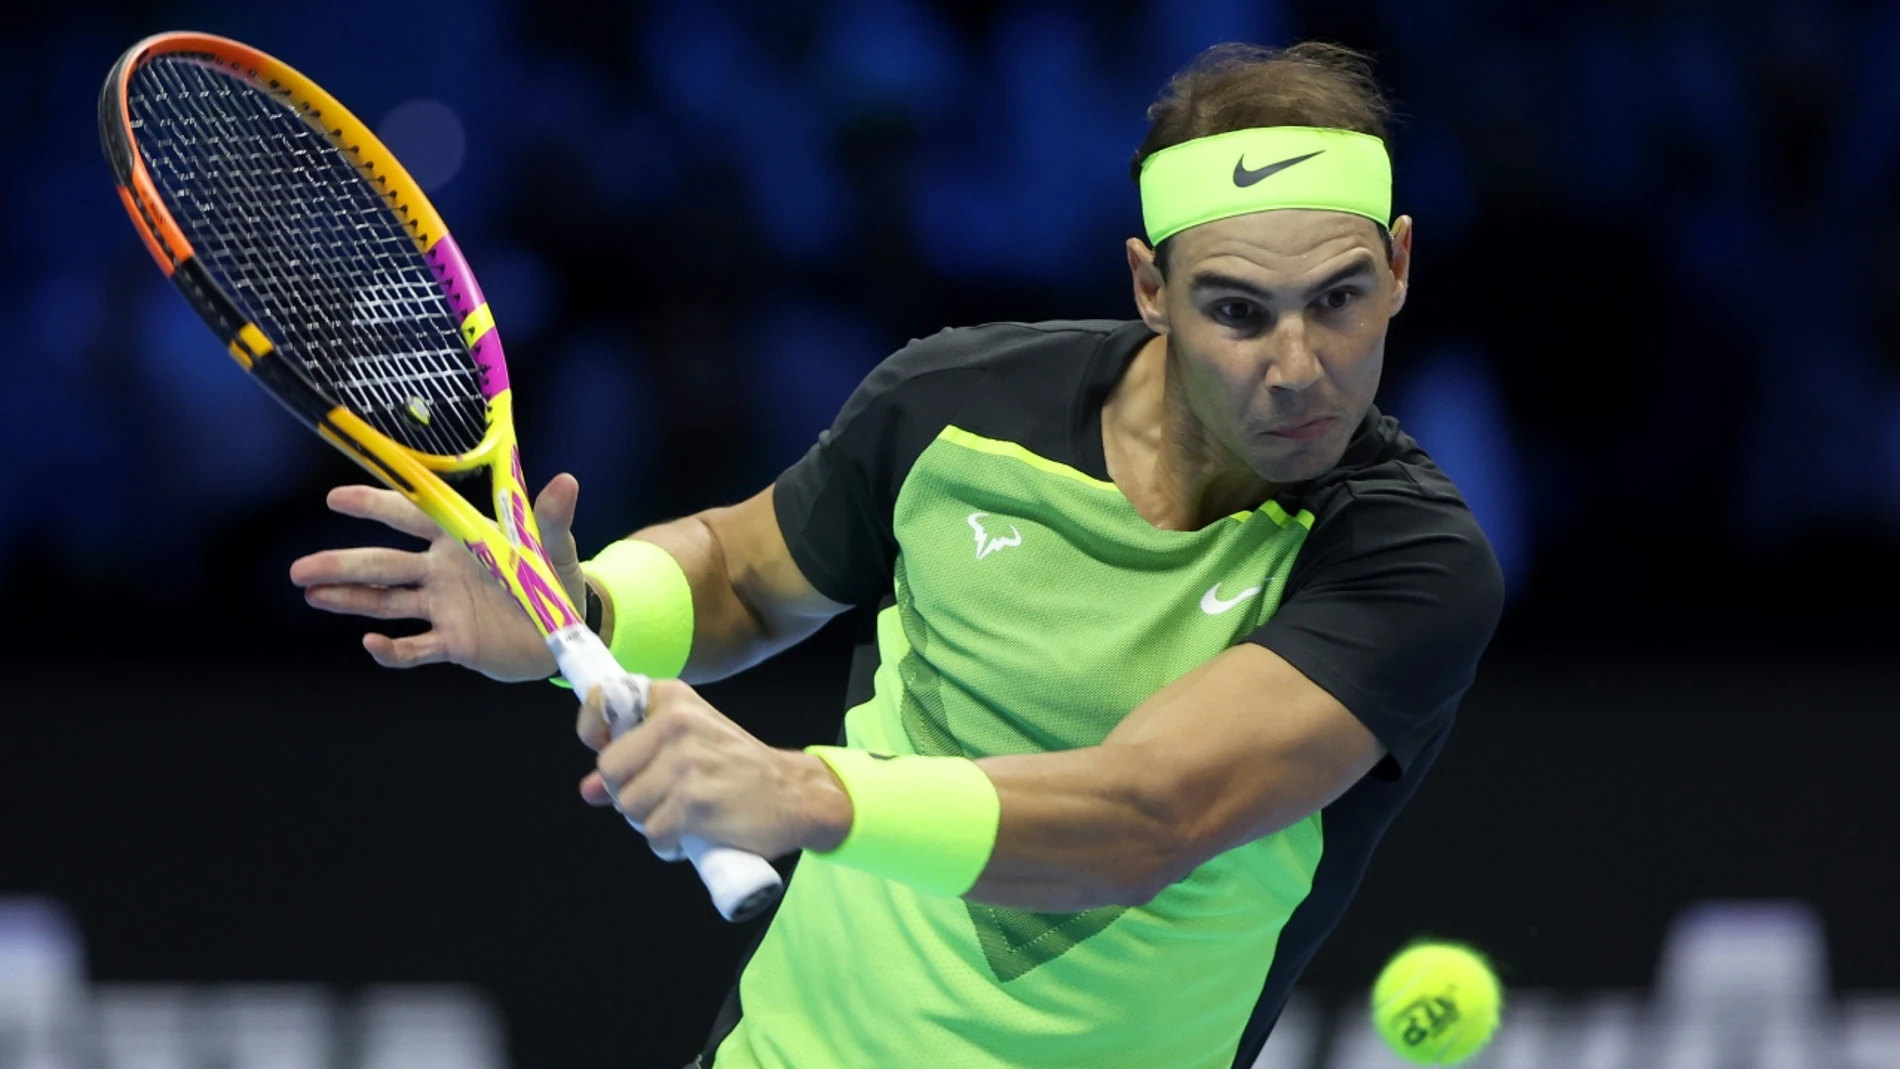 Repulsión Económico Democracia Rafa Nadal - Aliassime hoy en directo: Resultado y partido de tenis de las  ATP Finals 2022